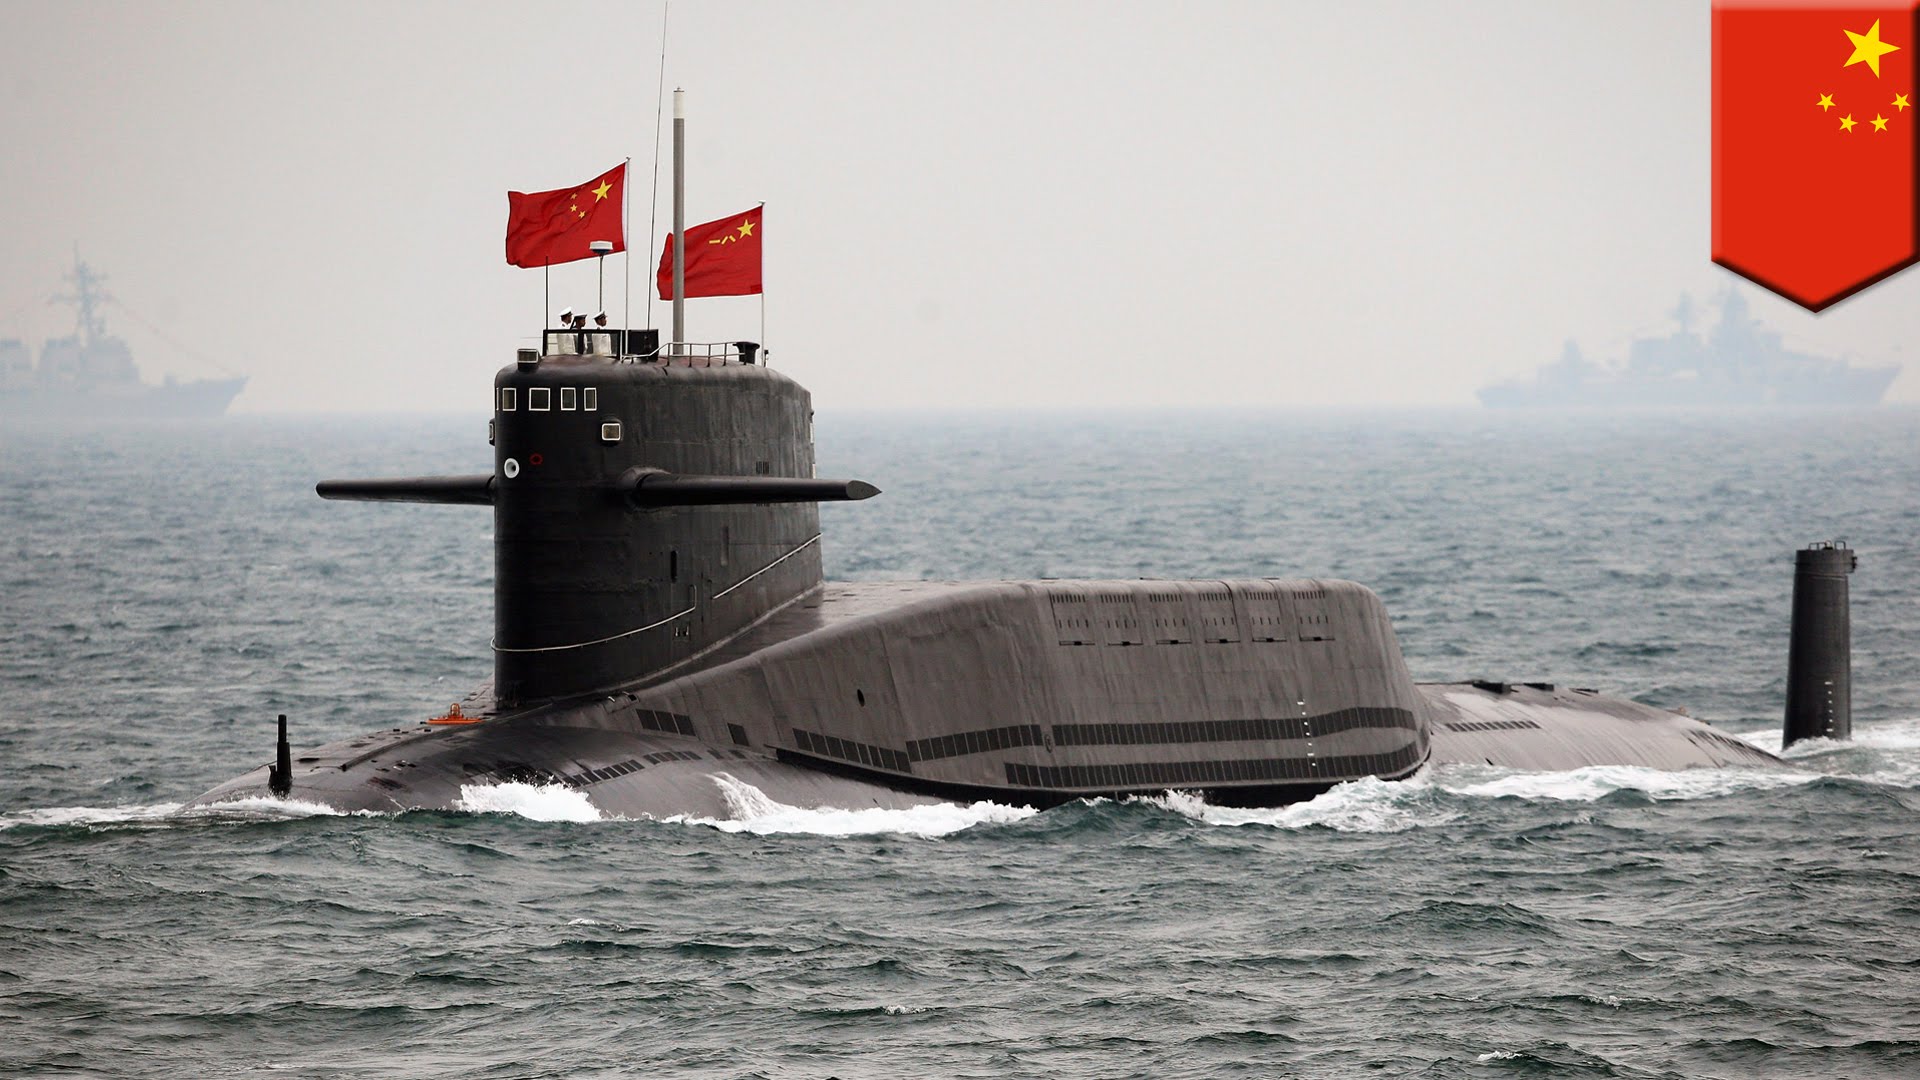 Лиу Хаисинг: Кина задржава право да прогласи зону ваздушне одбране над Јужним кинеским морем